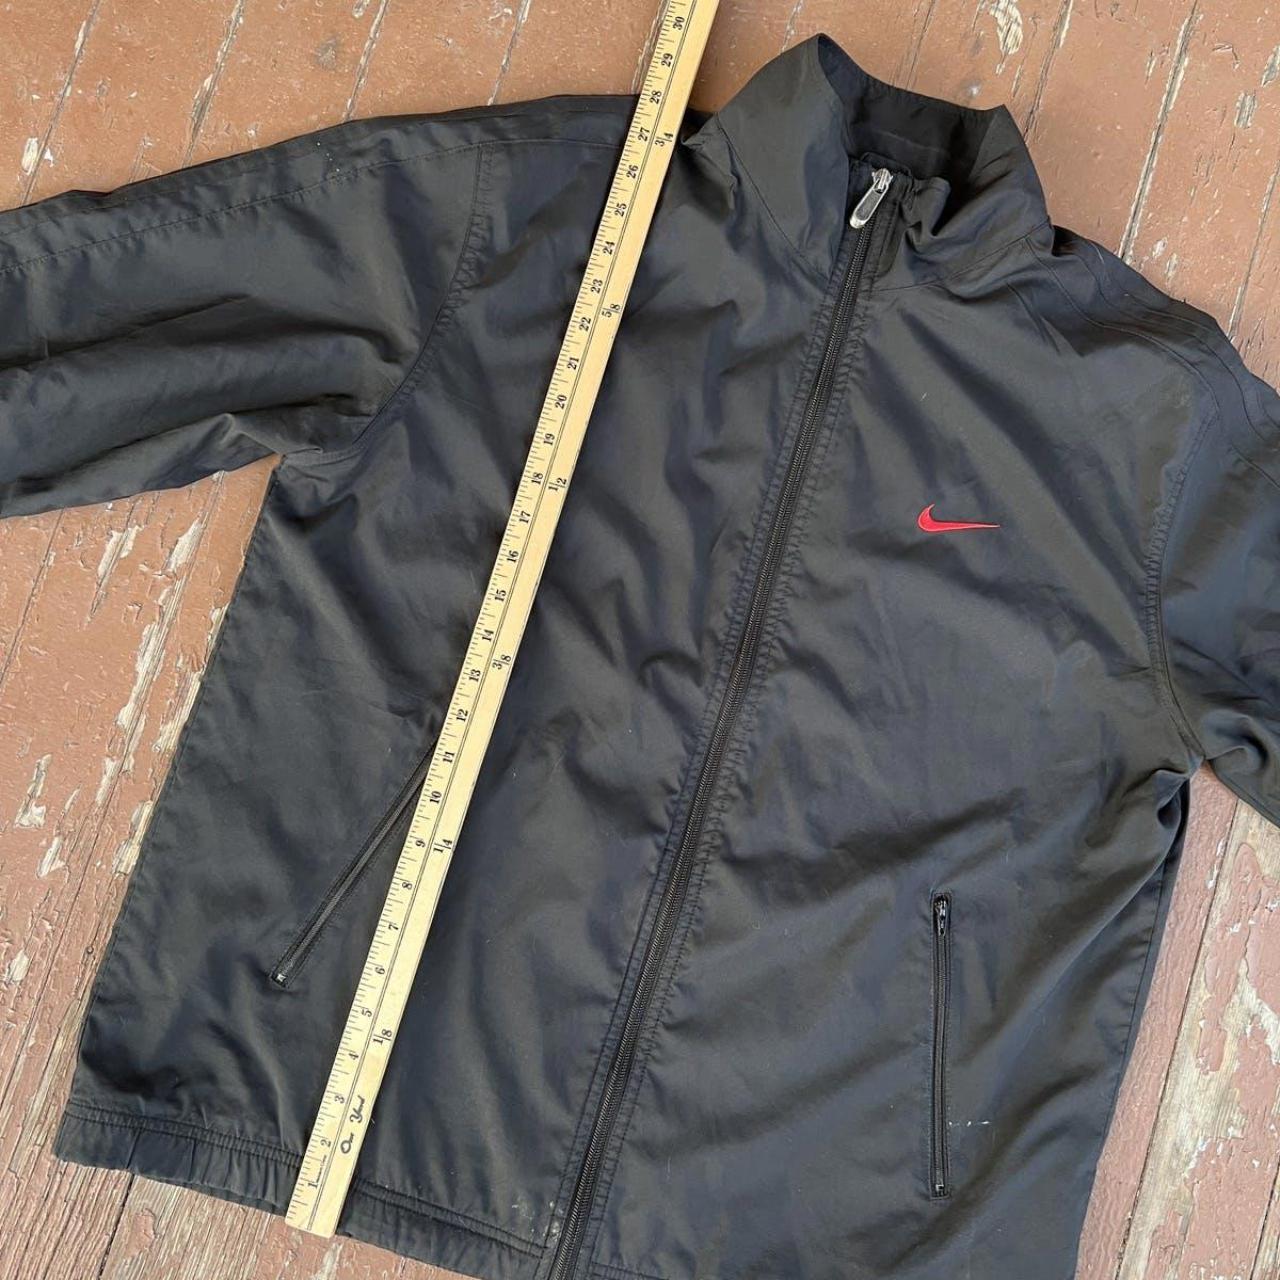 2000s nike brasil zip up jacket XL dm for - Depop